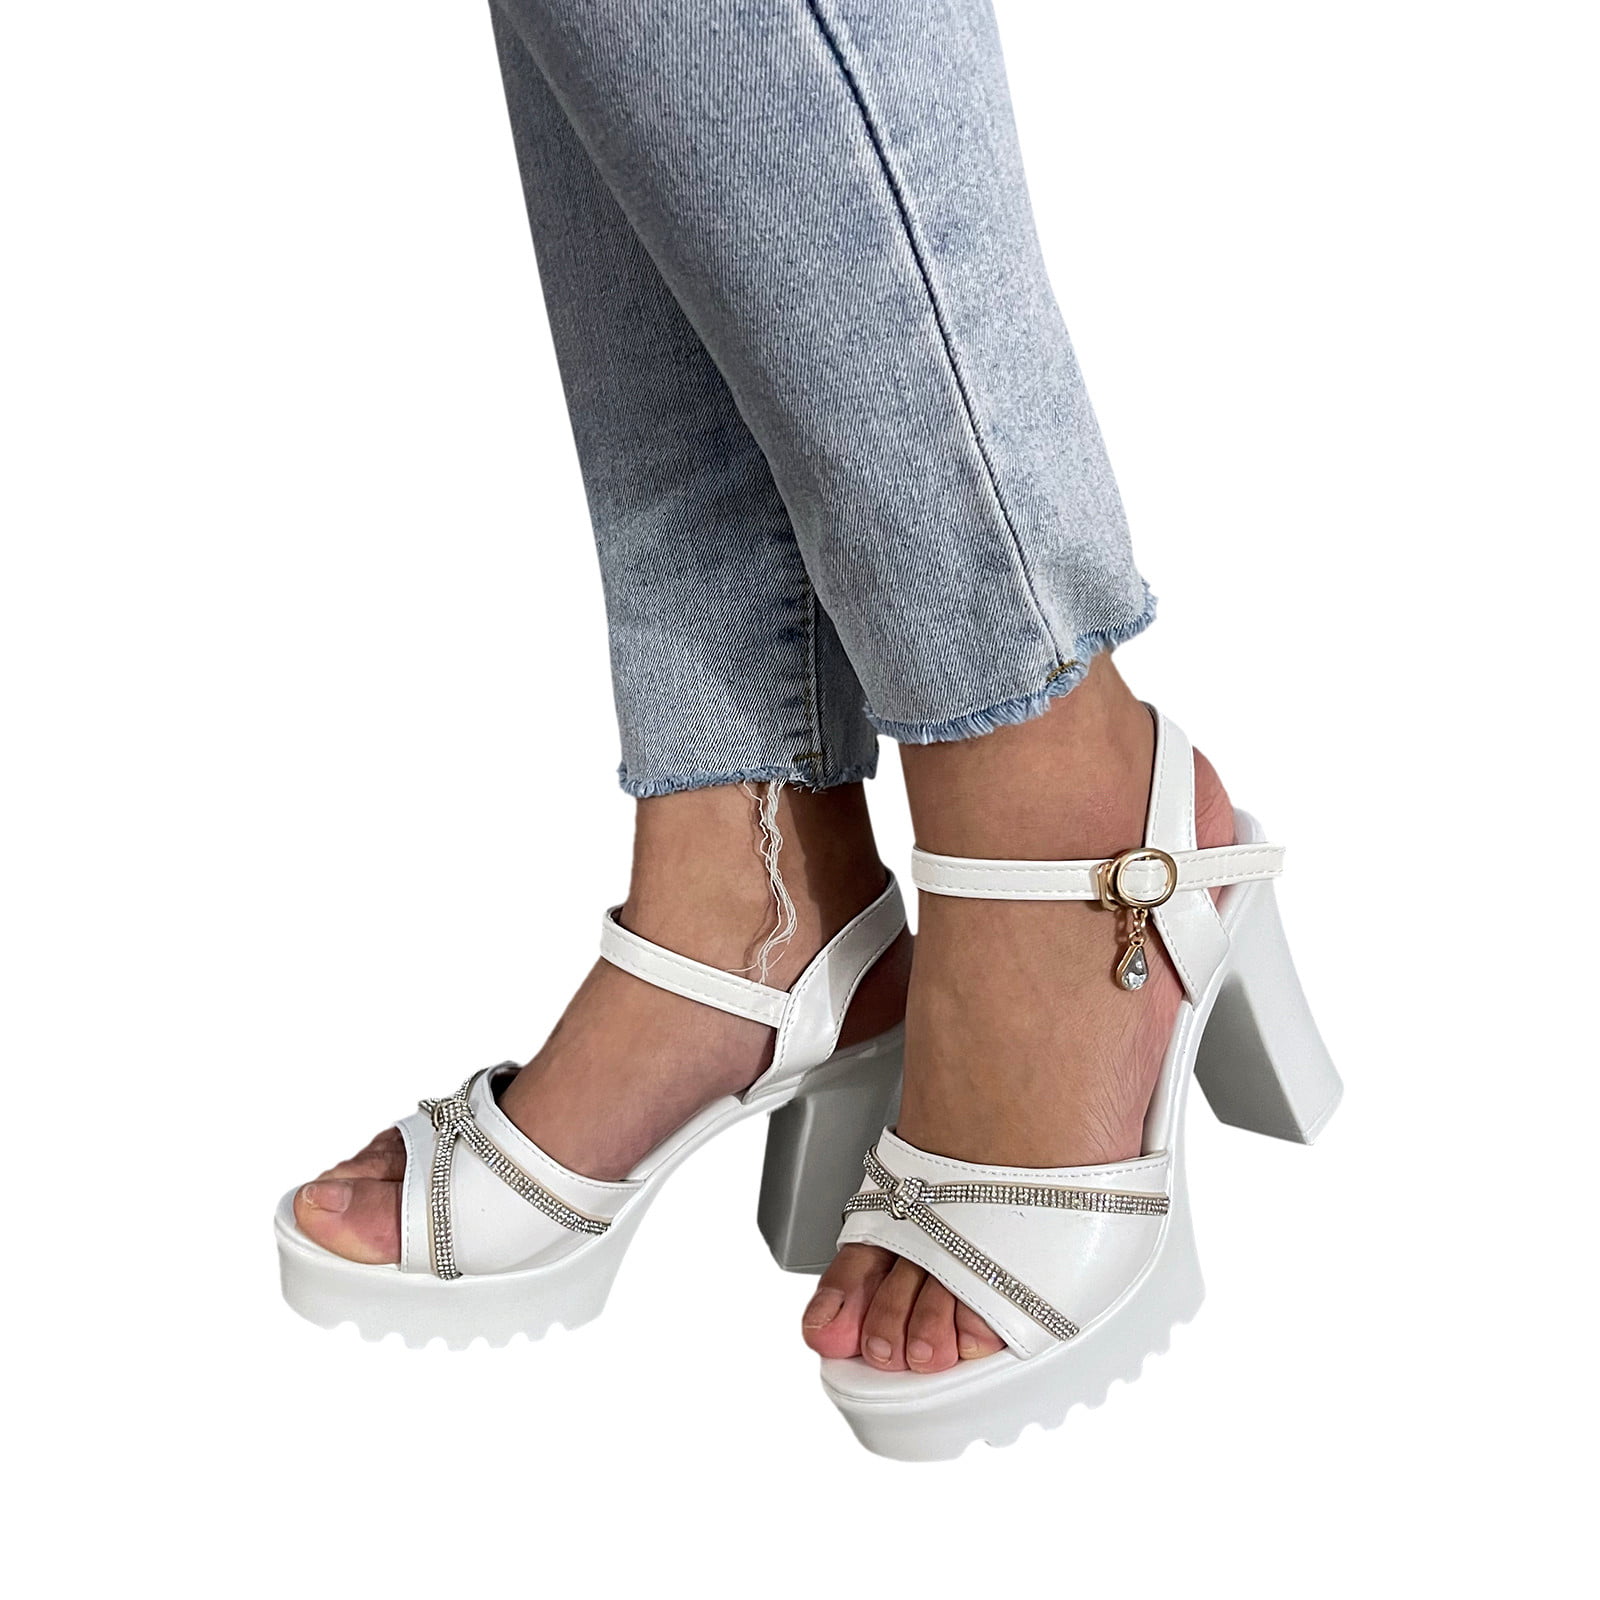 Platform heels 7 inch | Heels, Platform heels, 7 inch heels